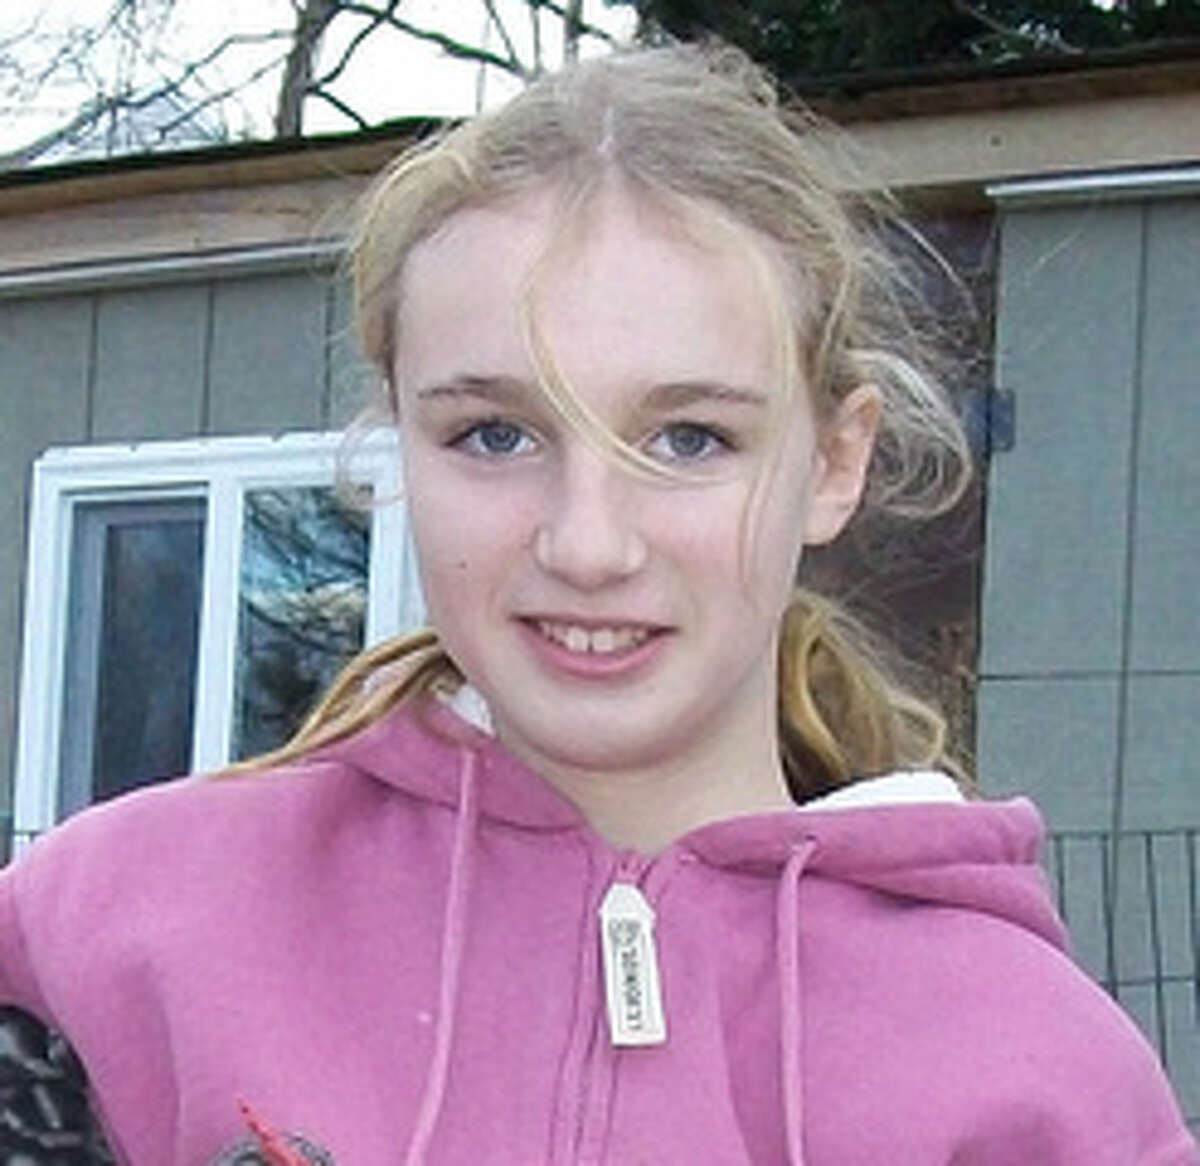 12 Year Old Orange Girl Missing 